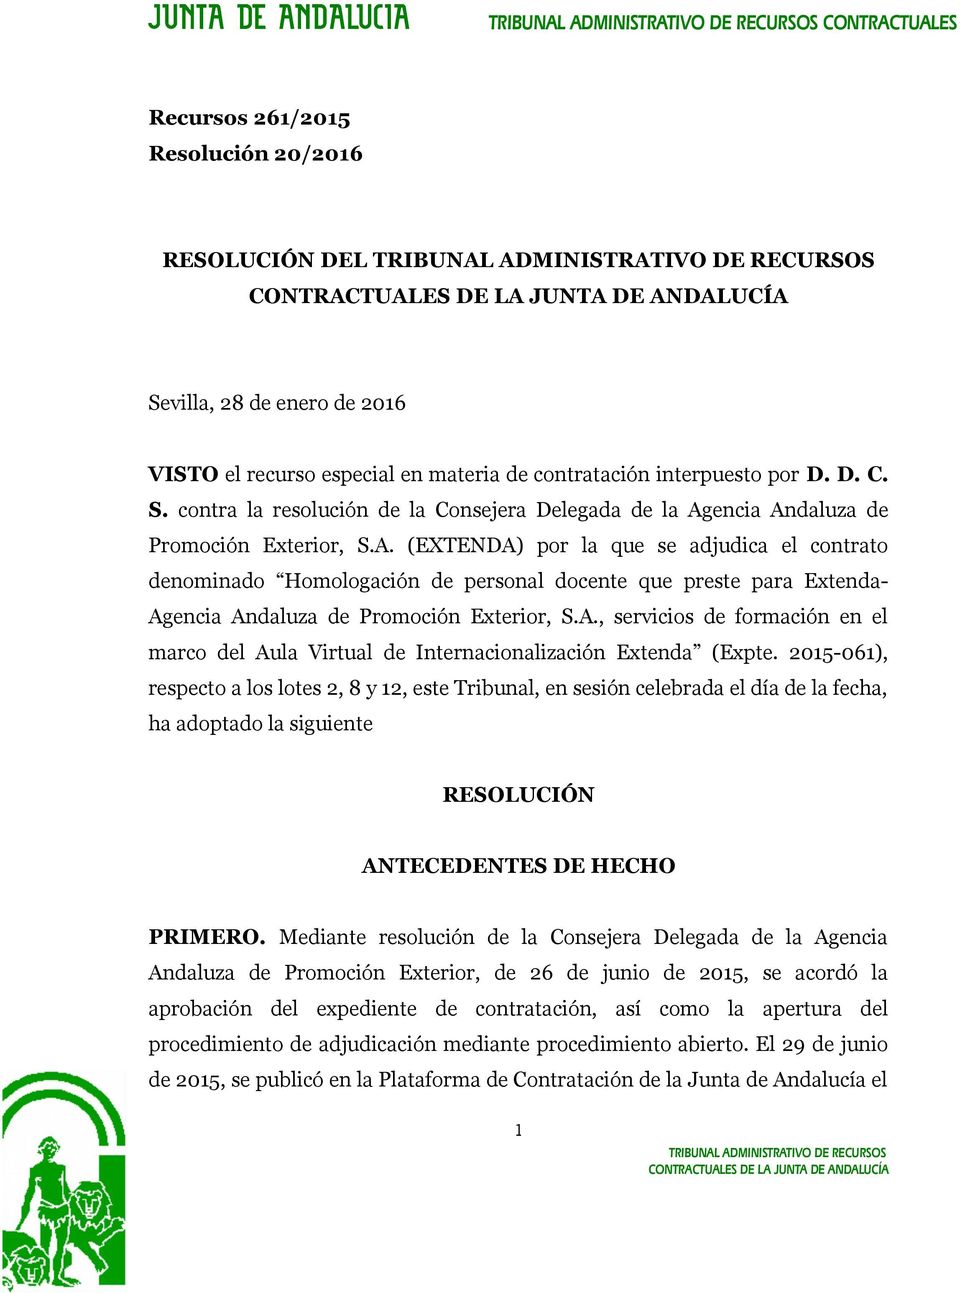 2015-061), respecto a los lotes 2, 8 y 12, este Tribunal, en sesión celebrada el día de la fecha, ha adoptado la siguiente RESOLUCIÓN ANTECEDENTES DE HECHO PRIMERO.